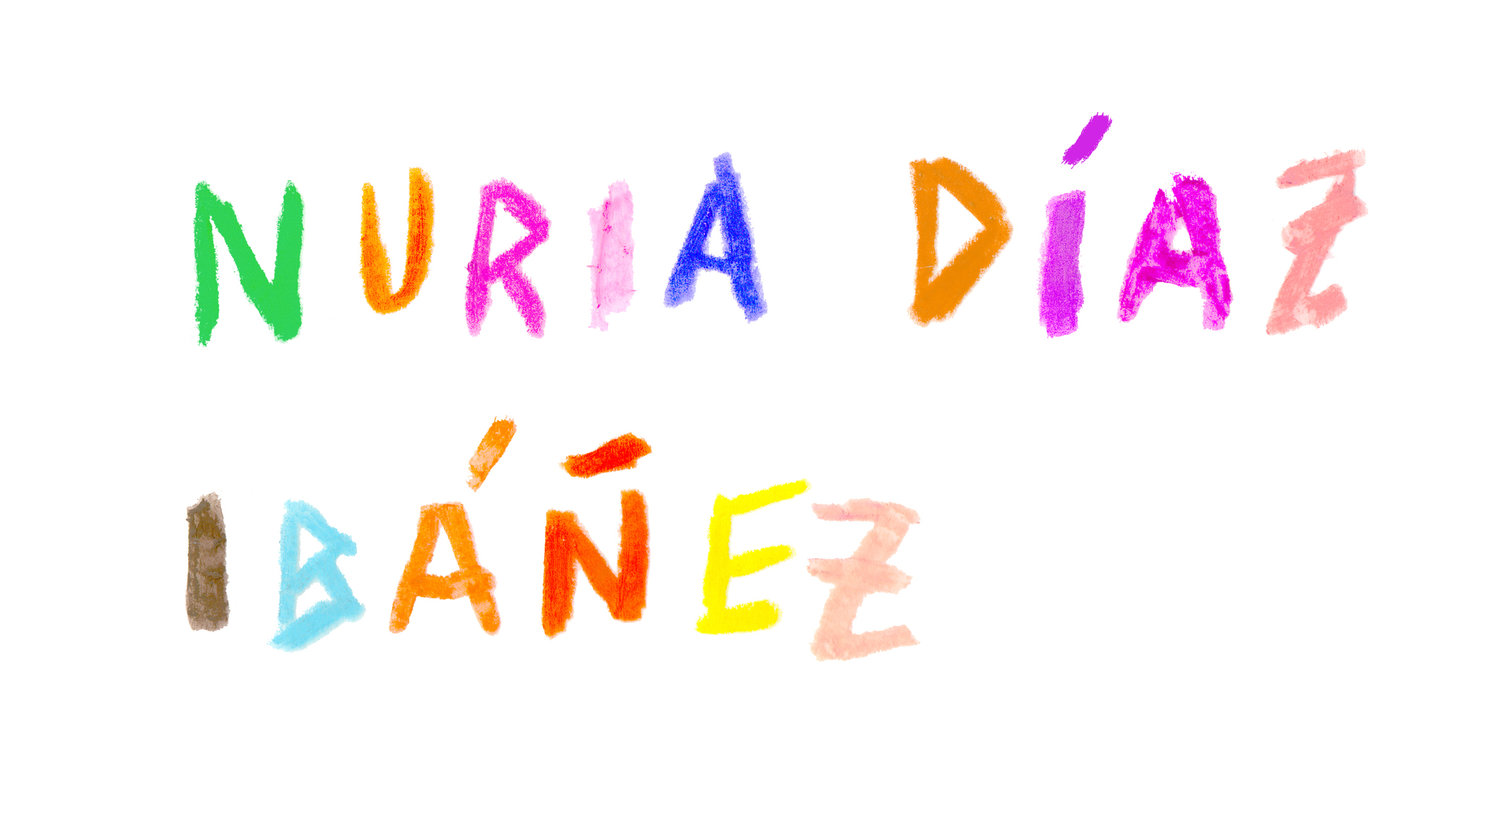 Nuria Díaz Ibáñez